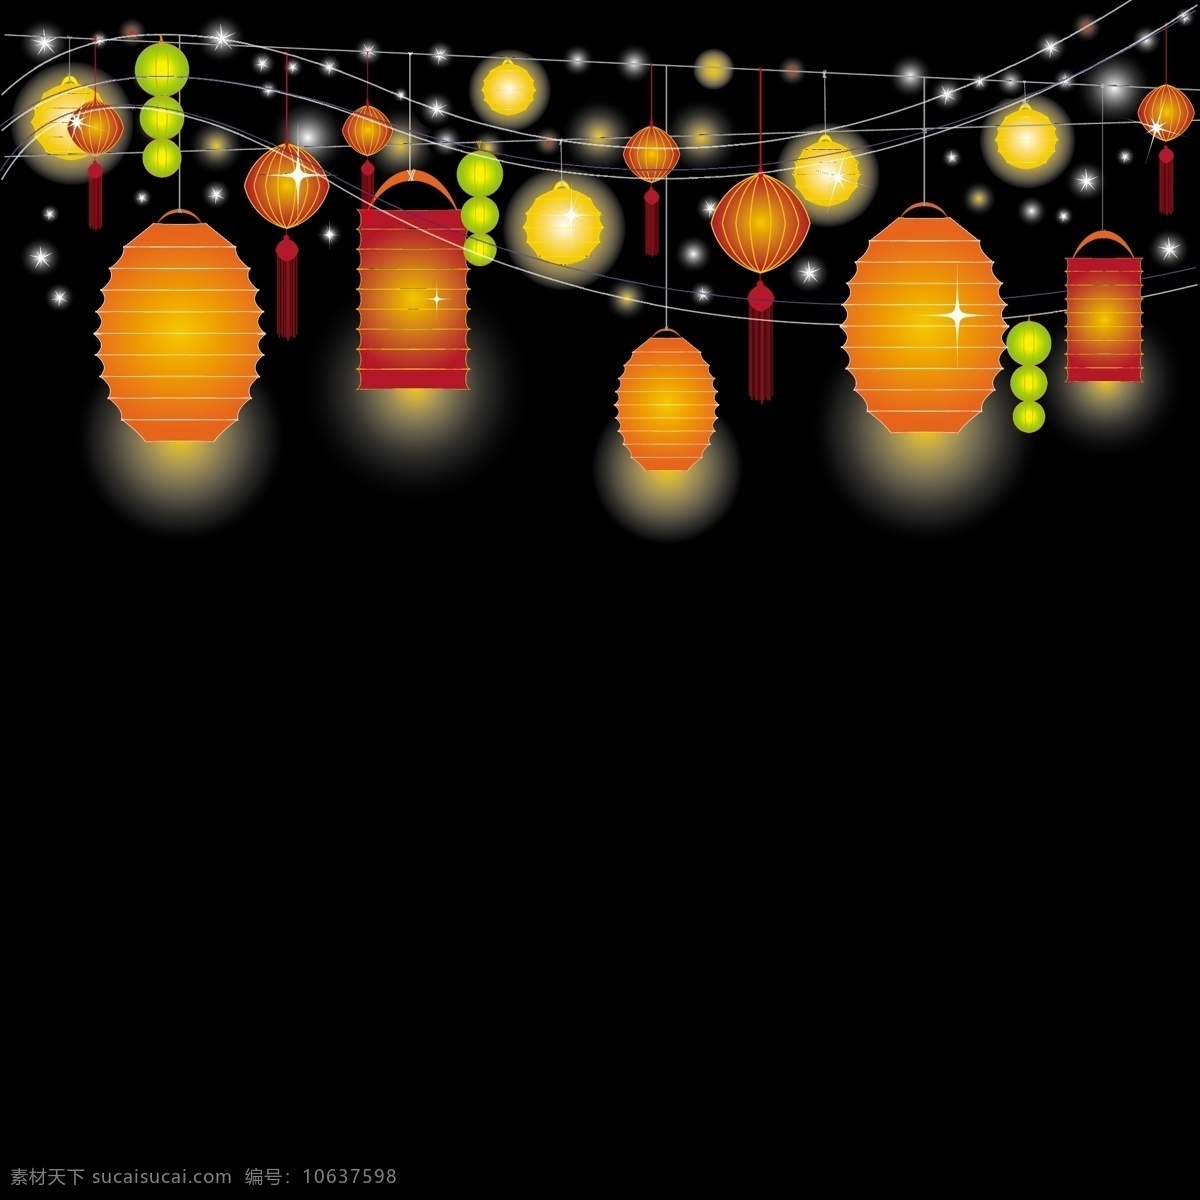 慶 祝 元旦 快 樂 元宵 花燈 燈 中國傳統燈飾 节日素材 2015 新年 春节